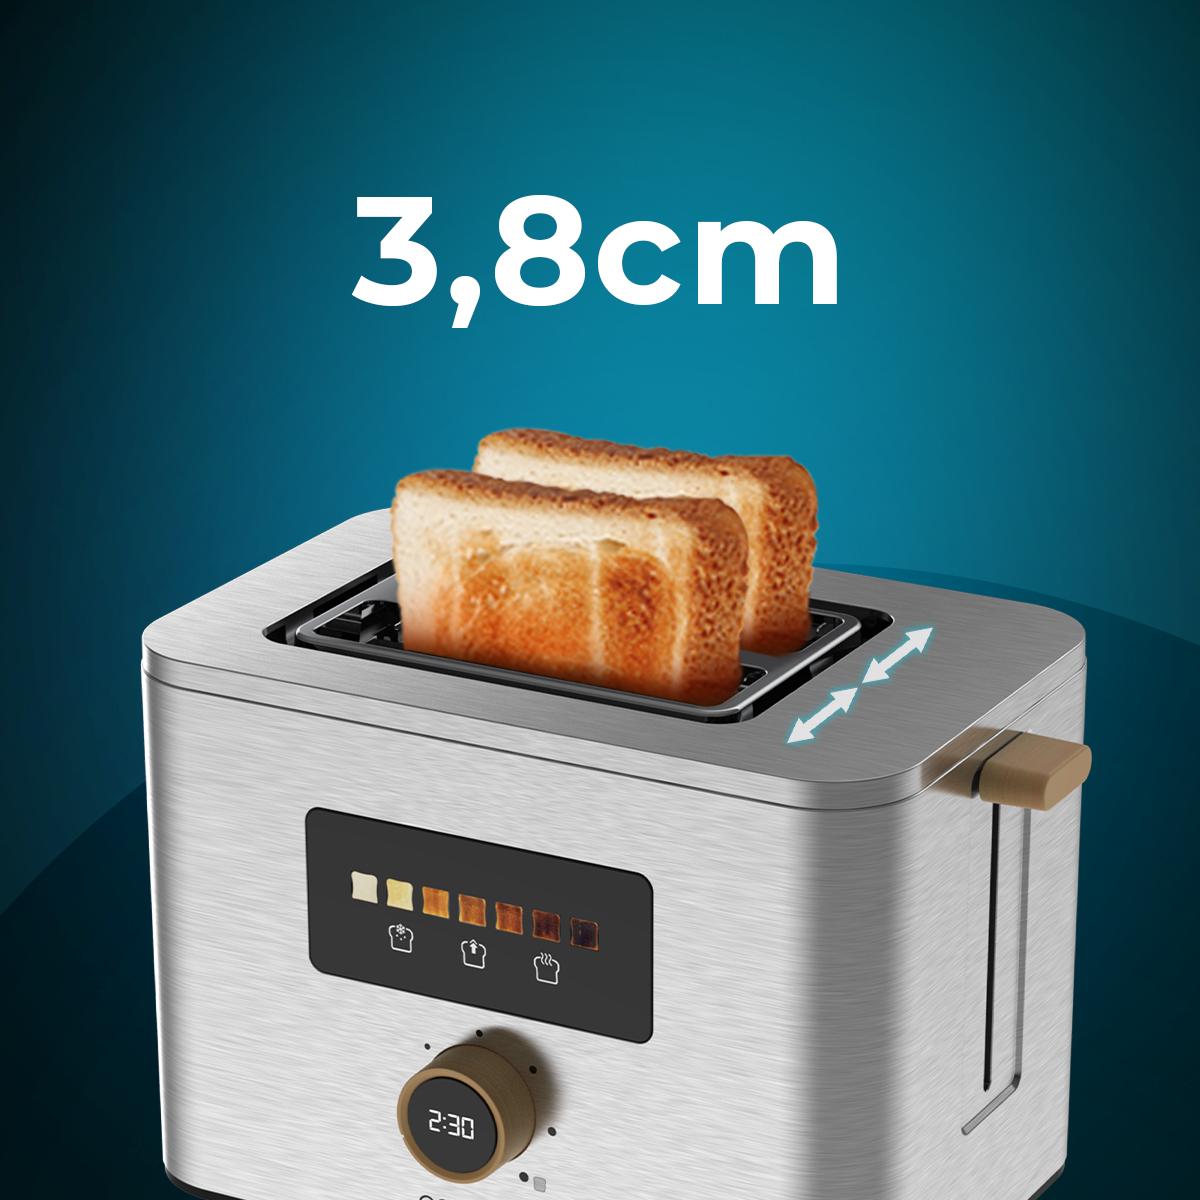 Cecotec Grille-pain vertical Toast&Taste Double W, 650 W, Double fente  large pour 2 tartines, Facile à nettoyer, Arrêt et Popup automatiques,  Pinces d'extraction incluses, Bac à miettes en destockage et reconditionné  chez